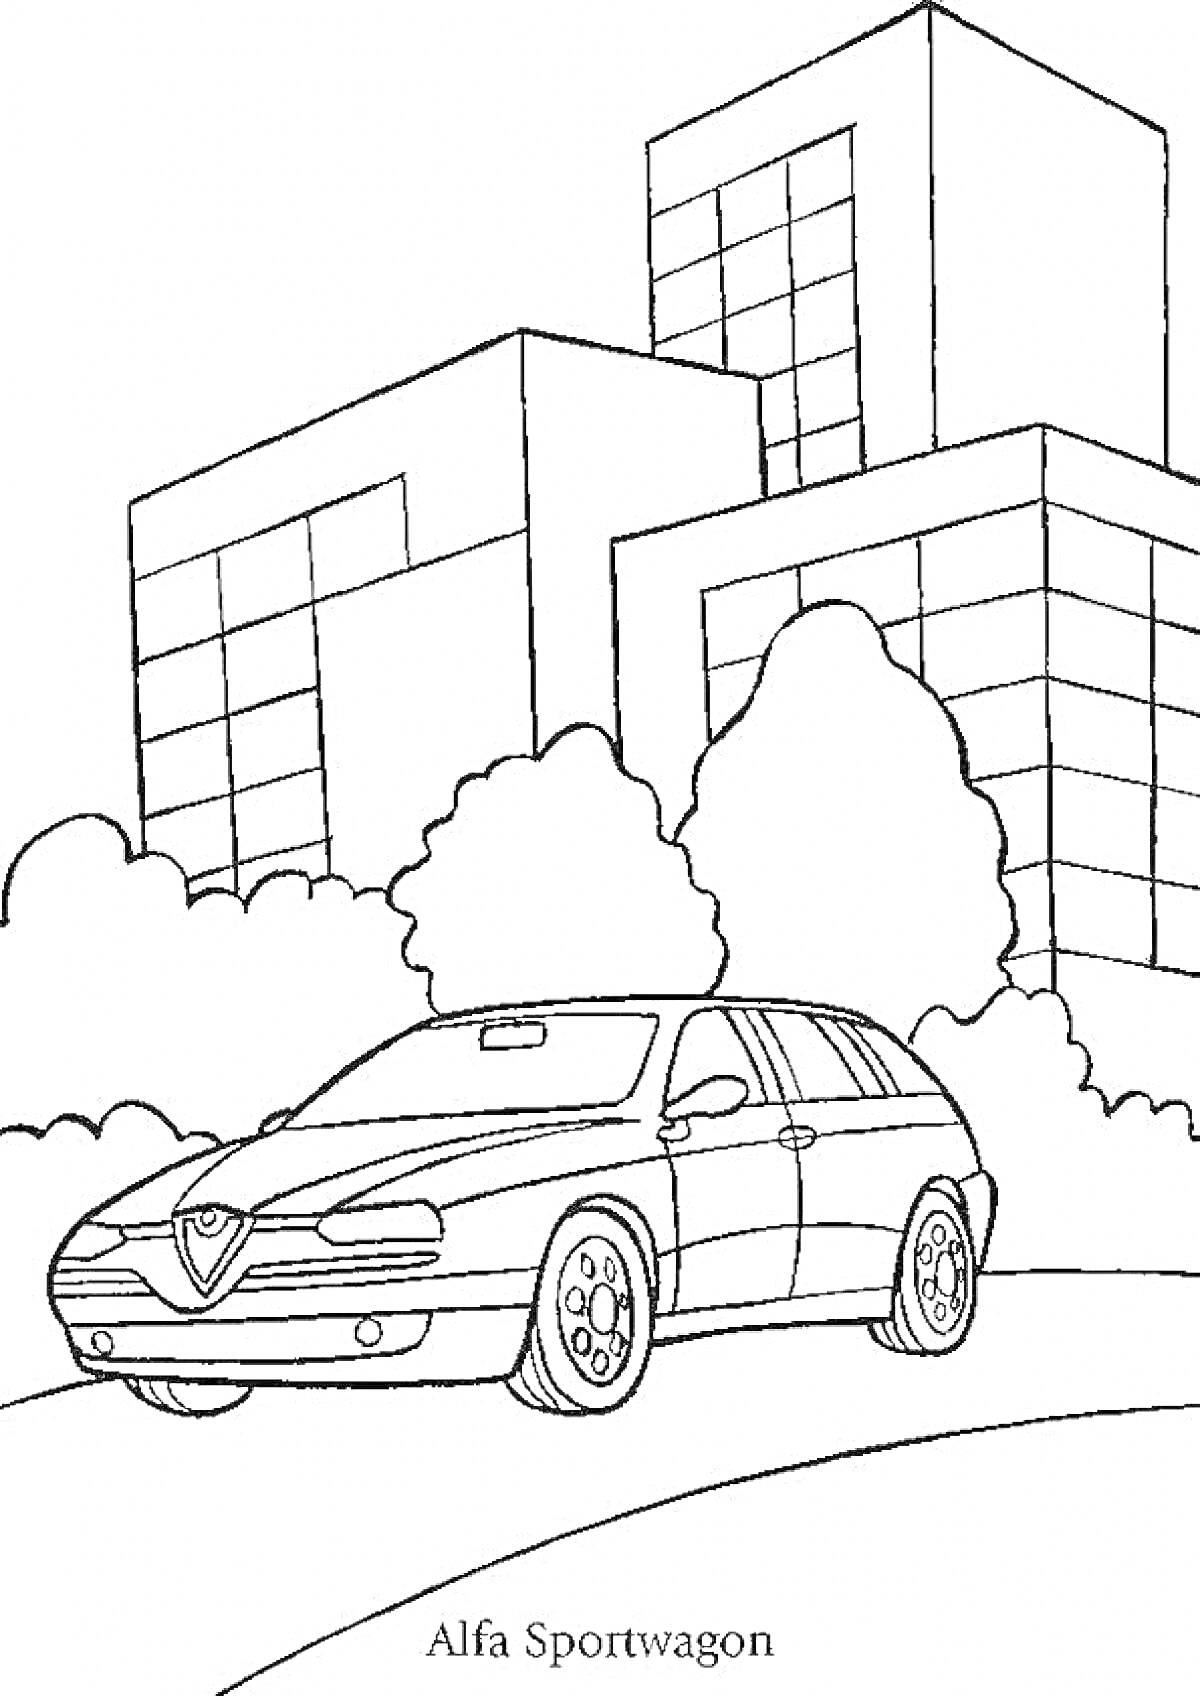 Раскраска Автомобиль Alfa Sportwagon на фоне городских зданий и деревьев